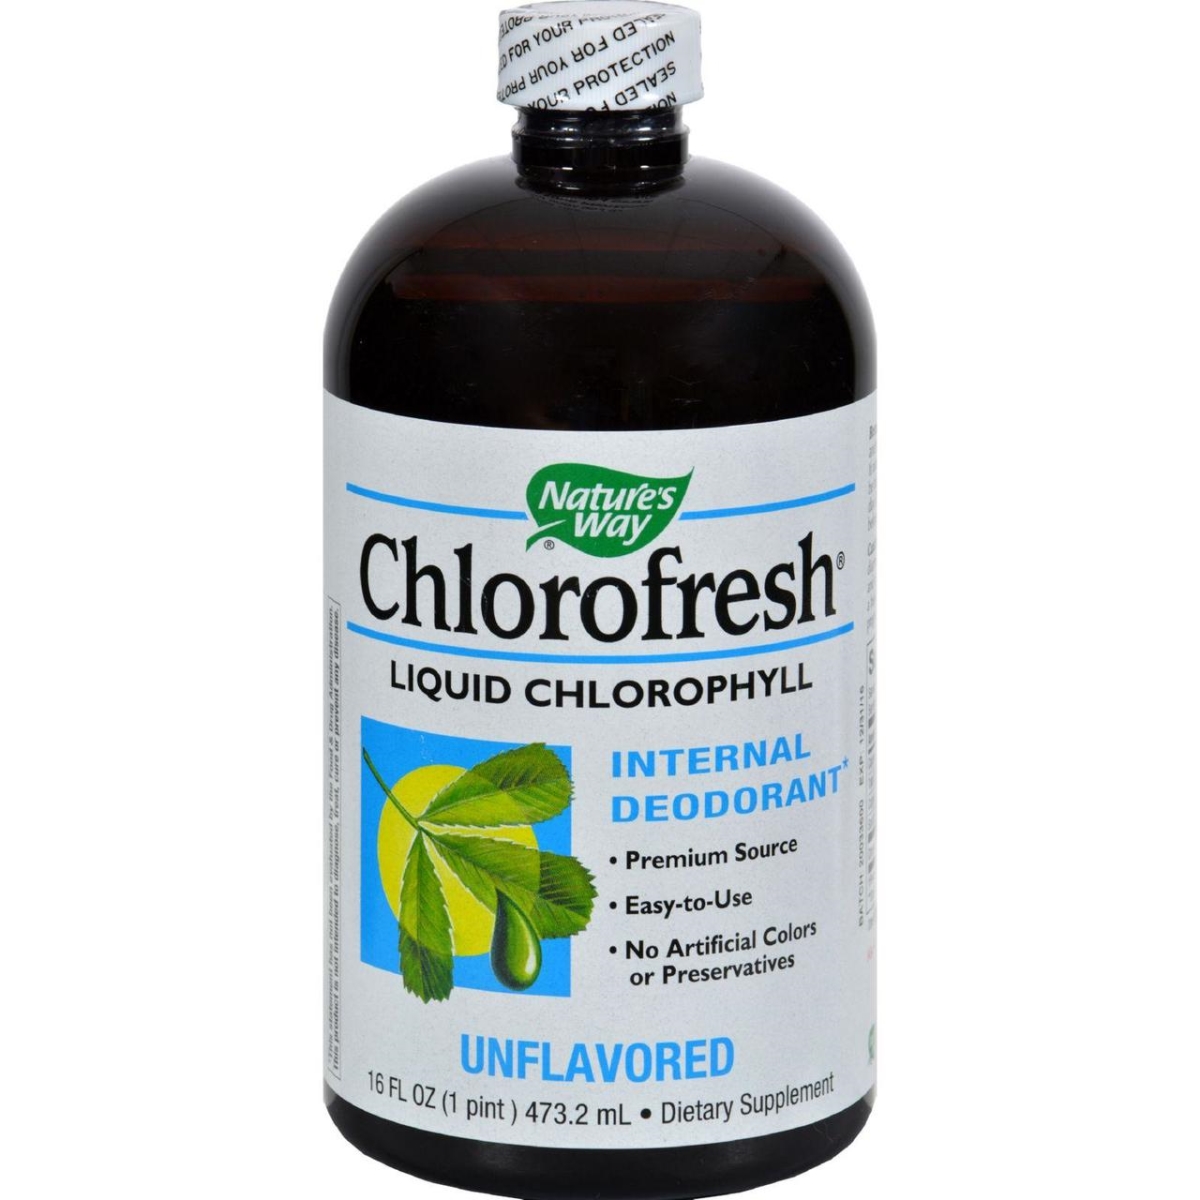 Hg0805309 16 Fl Oz Chlorofresh Liquid Chlorophyll Natural